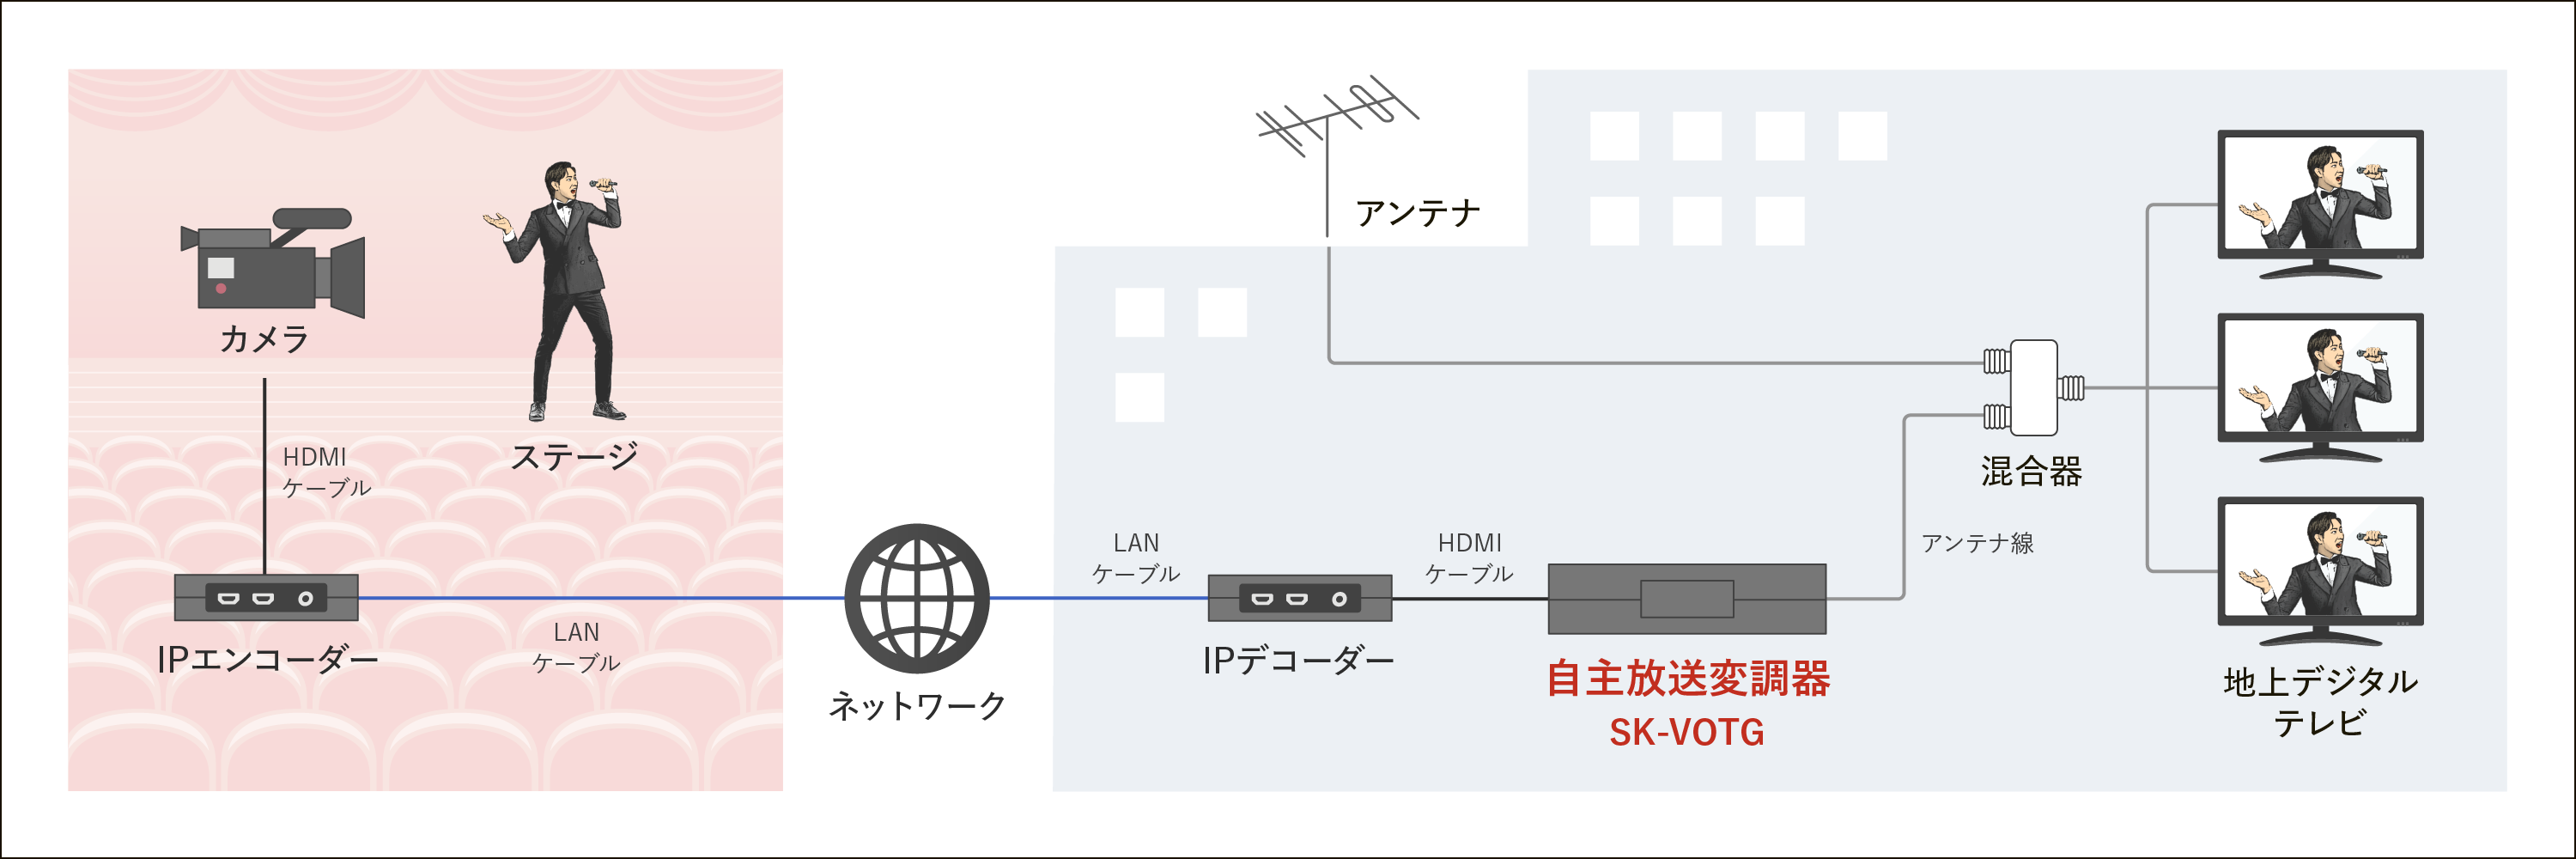 製品各部名称、地上デジタル用アンテナ出力、HDMI映像出力端子、LAN、AC電源コネクタ、HDMI映像入力端子、USB2つ、HDMI映像出力端子モニターへ接続